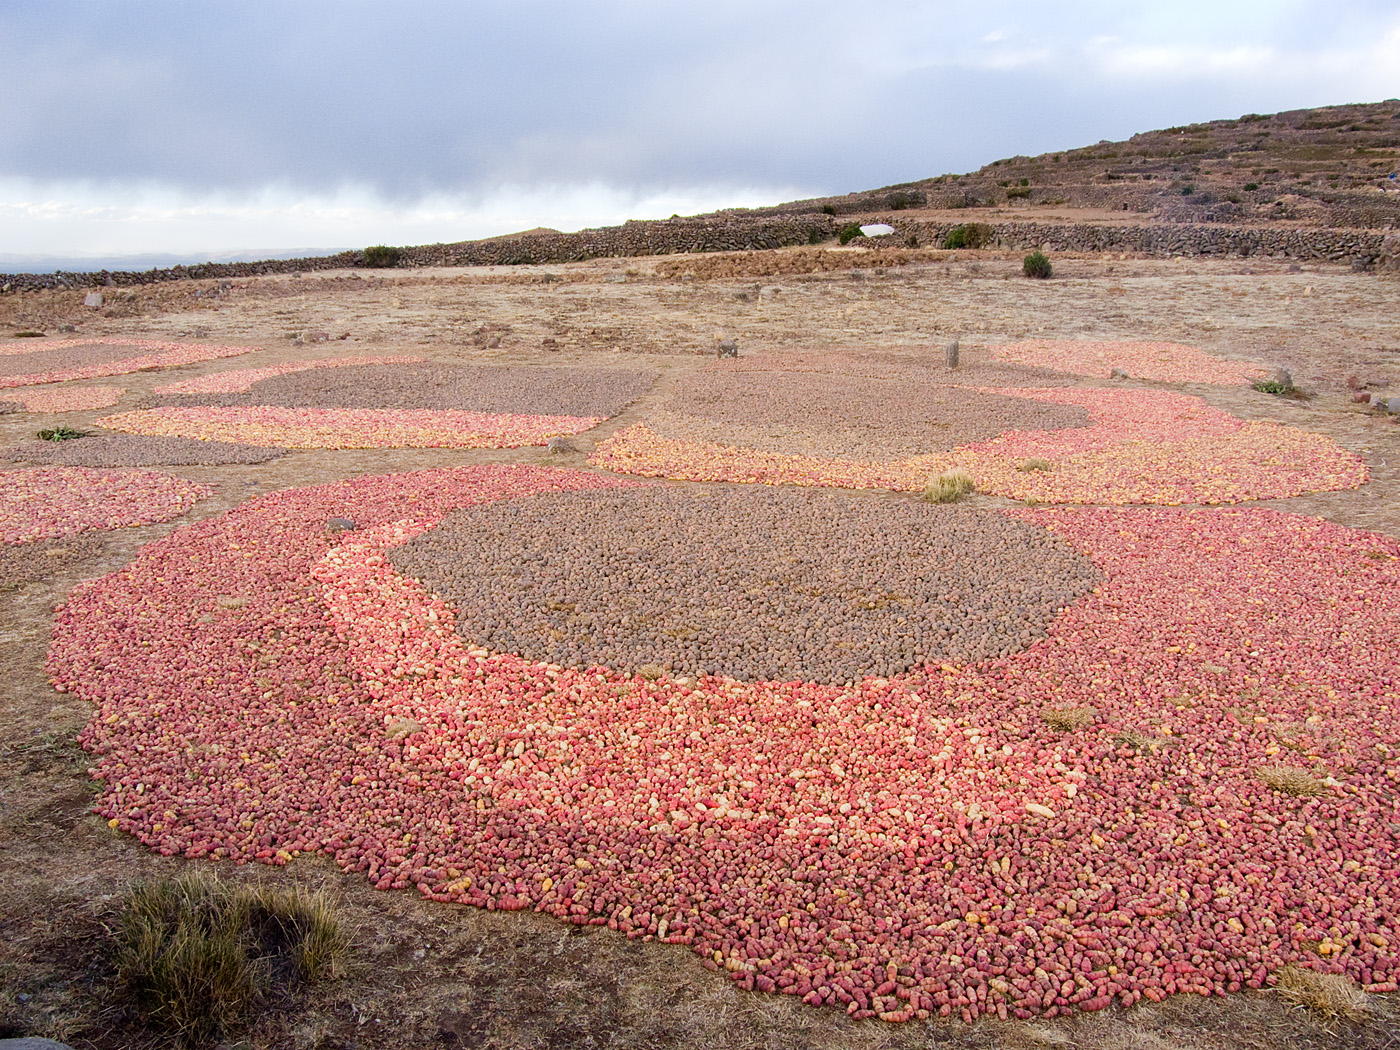 Potatoes drying, Amantani Island, Lake Titicaca